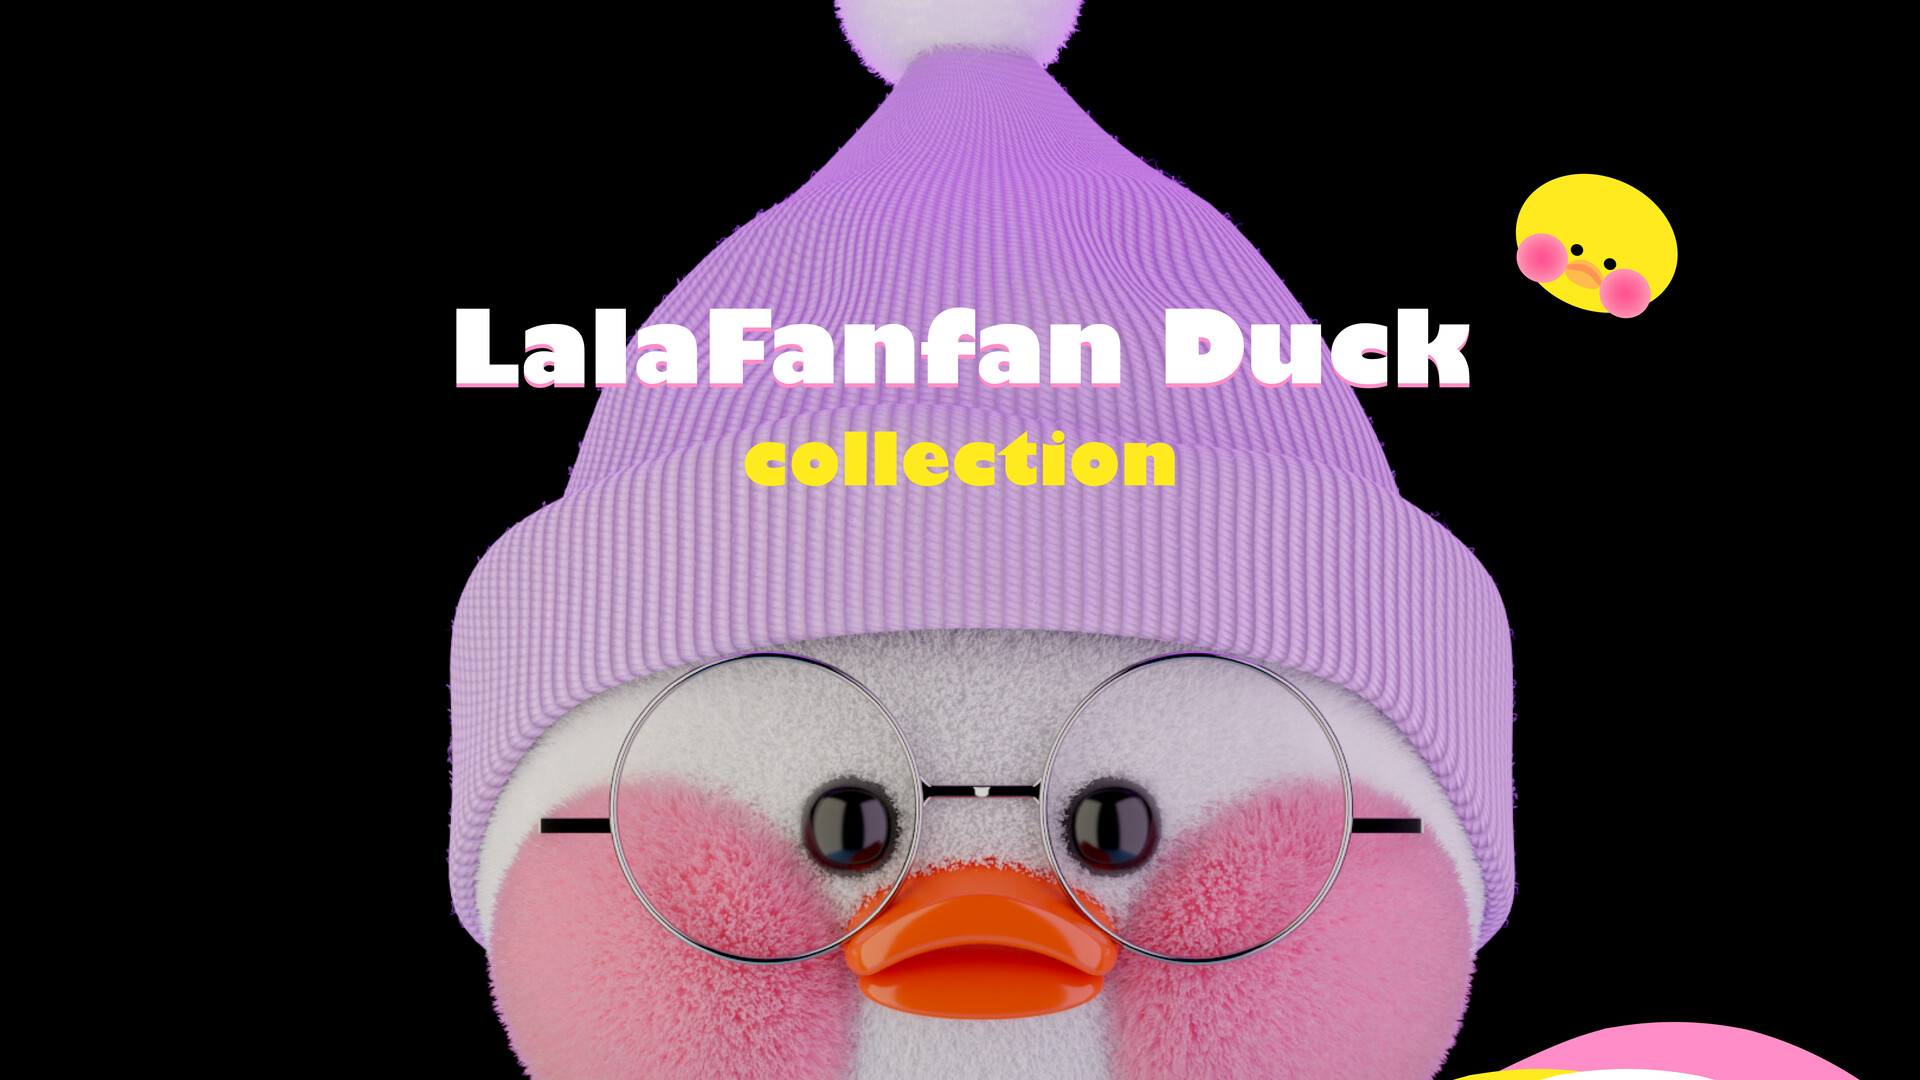 Diy face mask for lalafanfan duck, diy